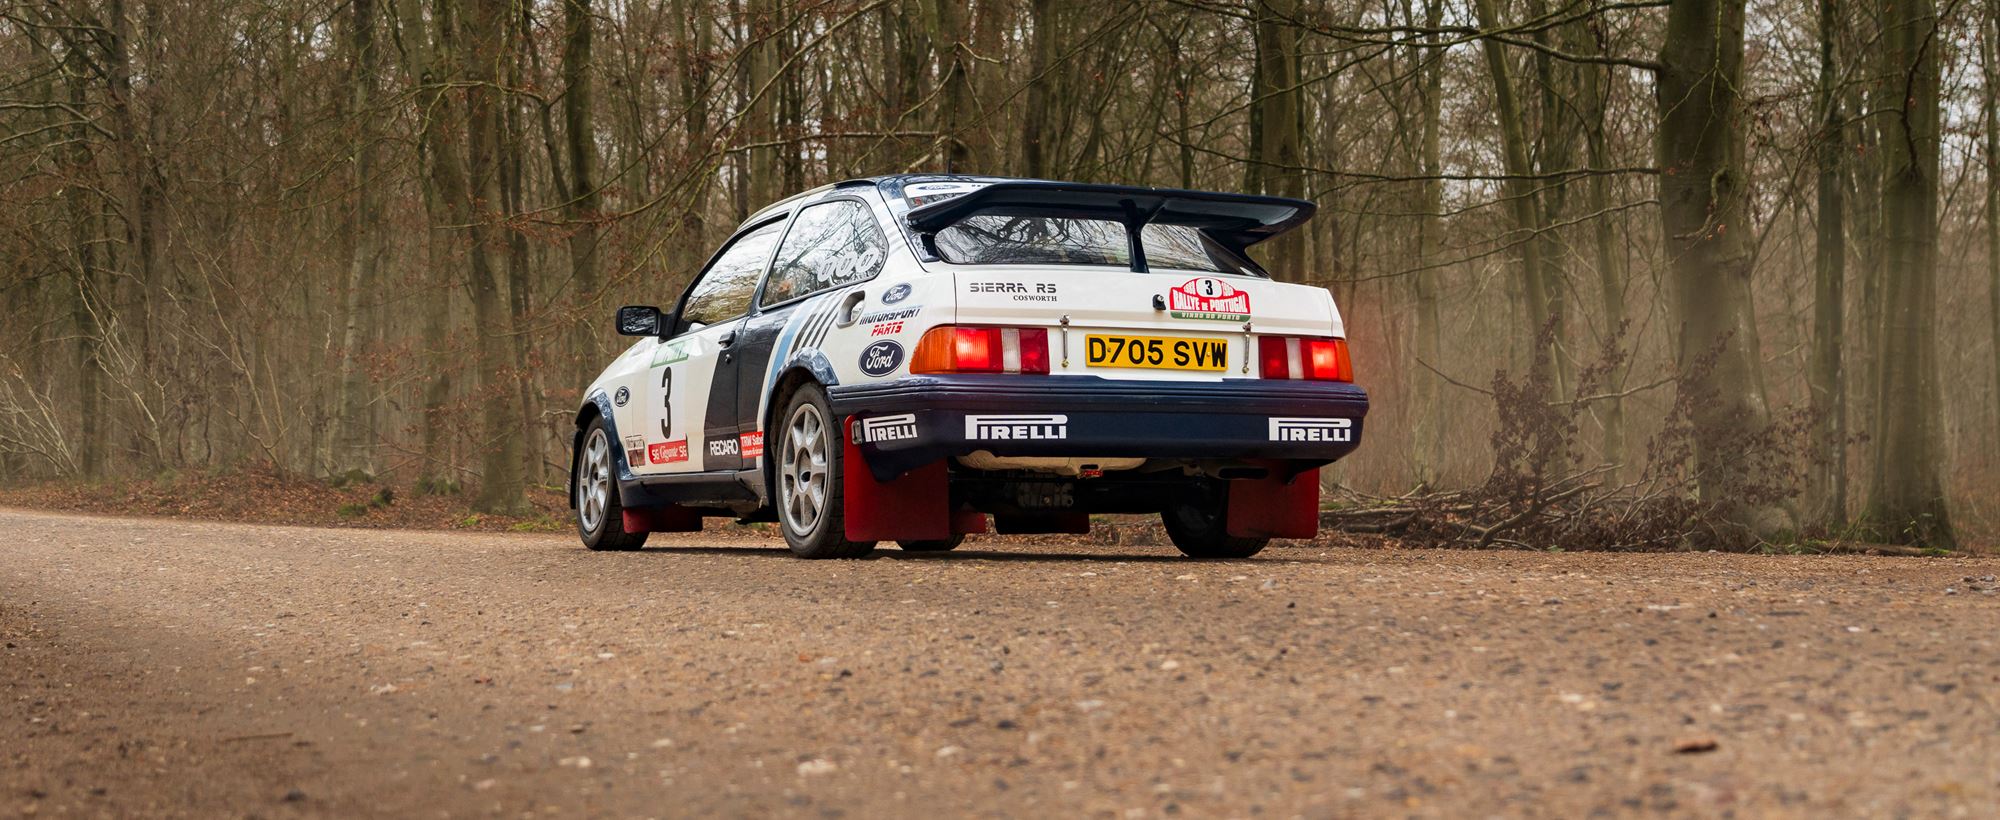 Sierra RS Rally -03.jpg